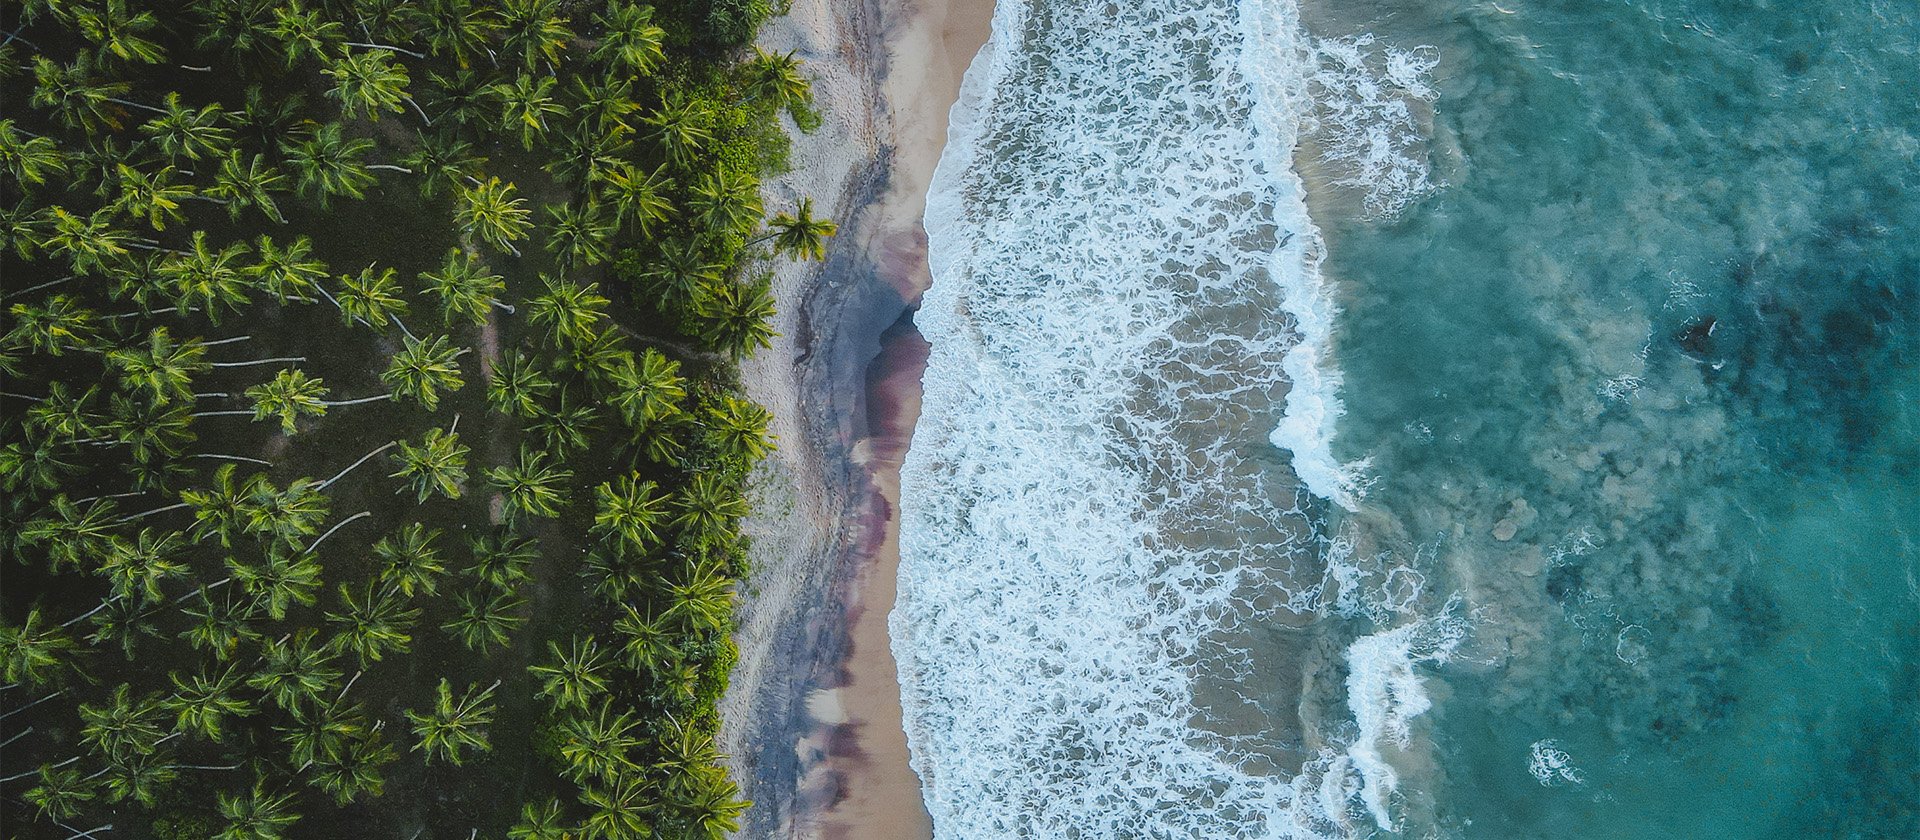 ANI Sri Lanka - Beach